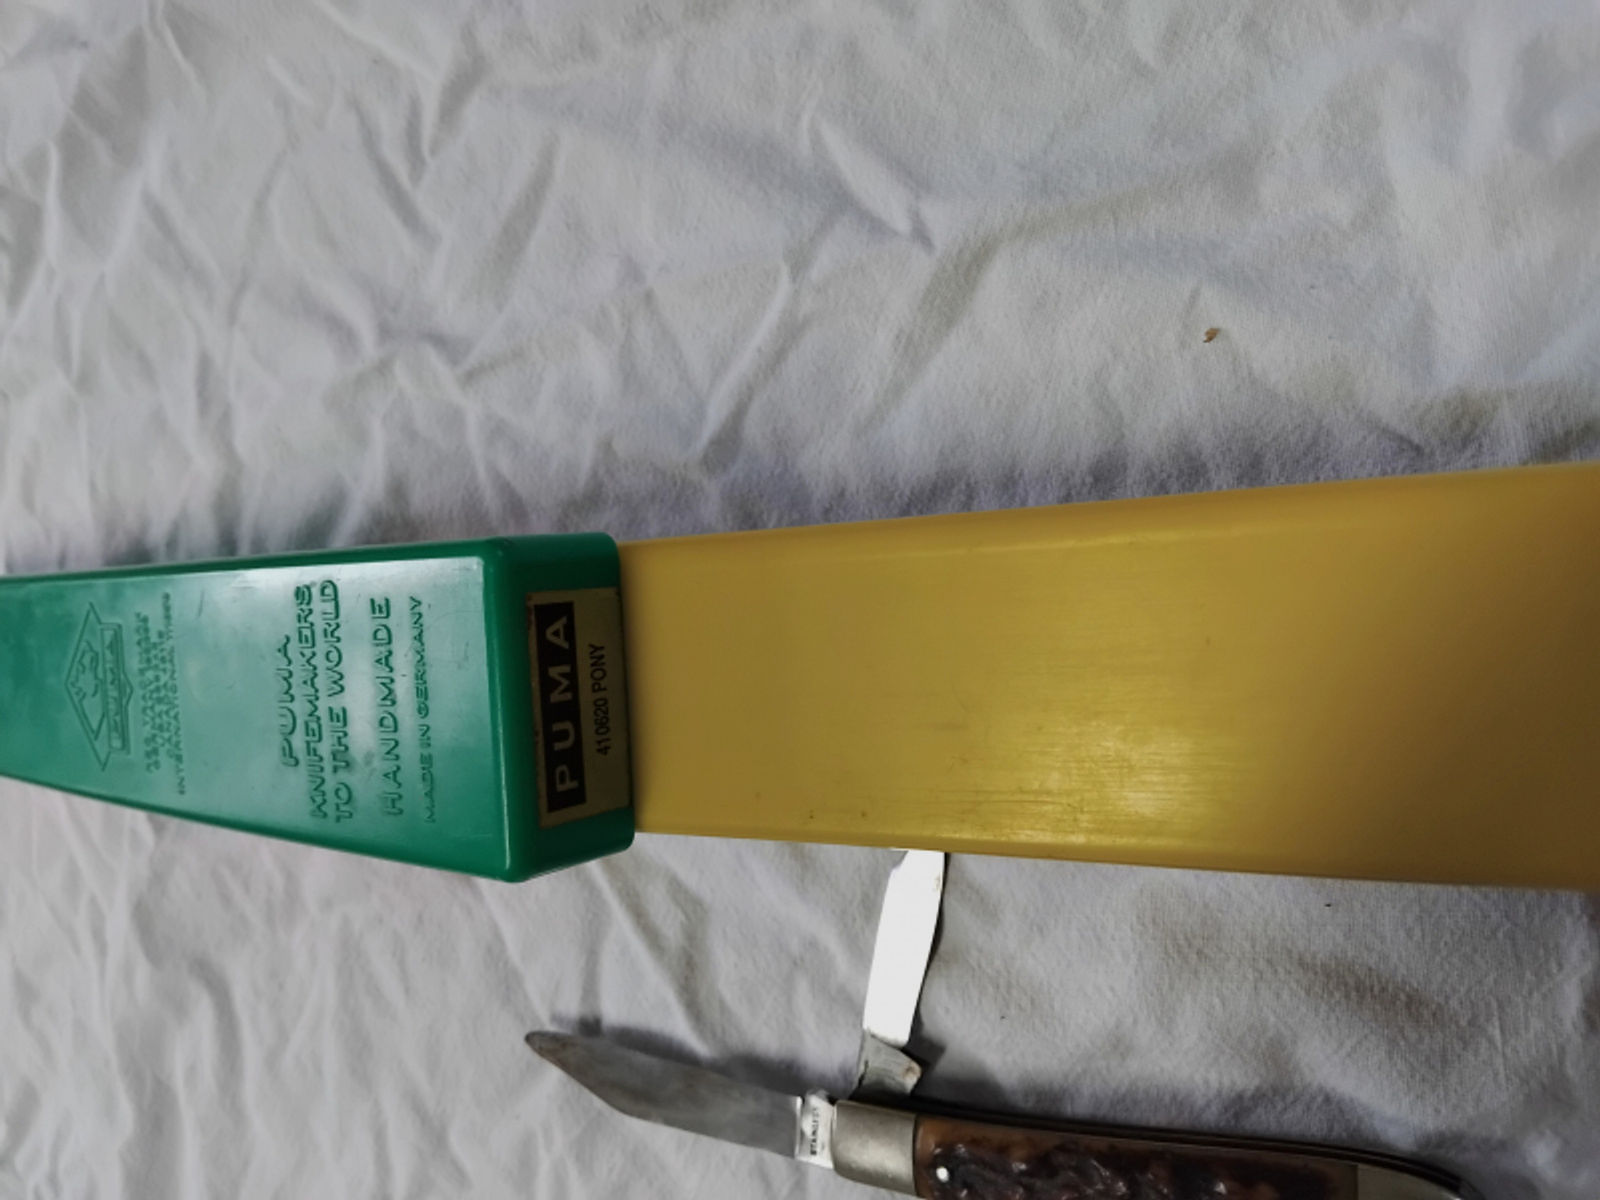 1973 Puma 620 ? Ponymesser mit Hirschgriffen in grün/gelb Fabrikbox